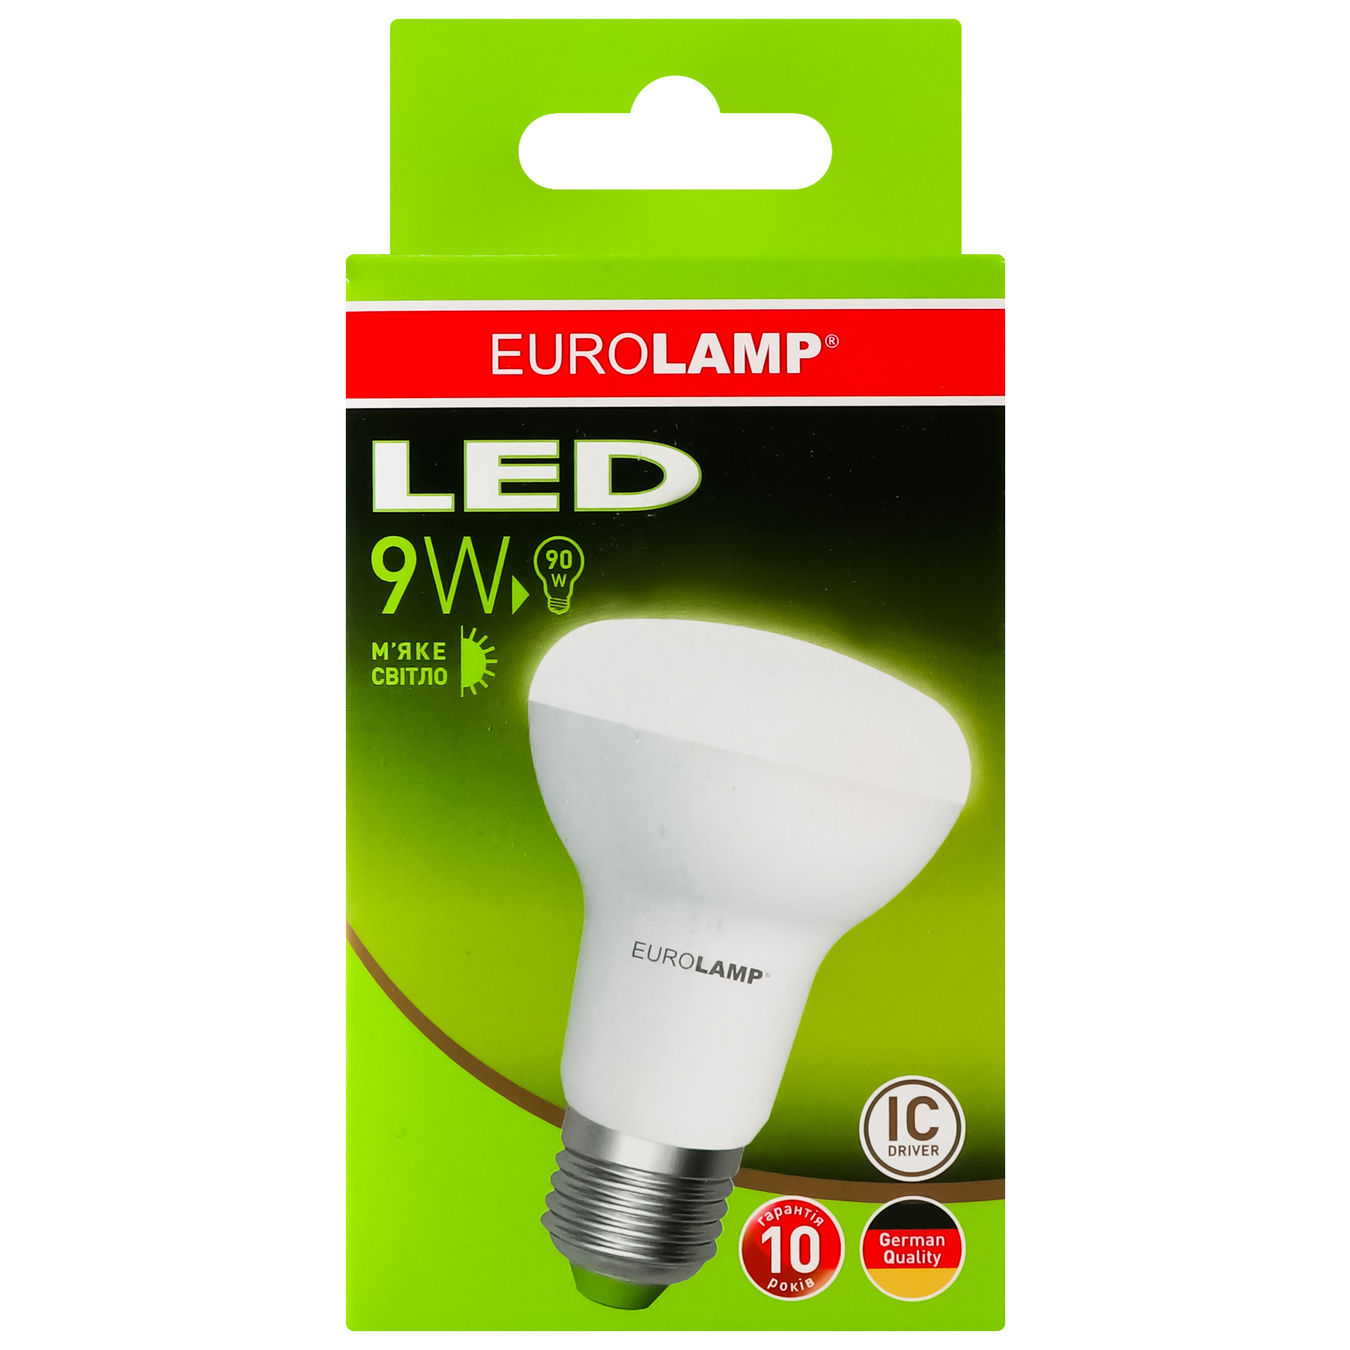 LED lamp Eurolamp eko P R63 9W 3000K E27